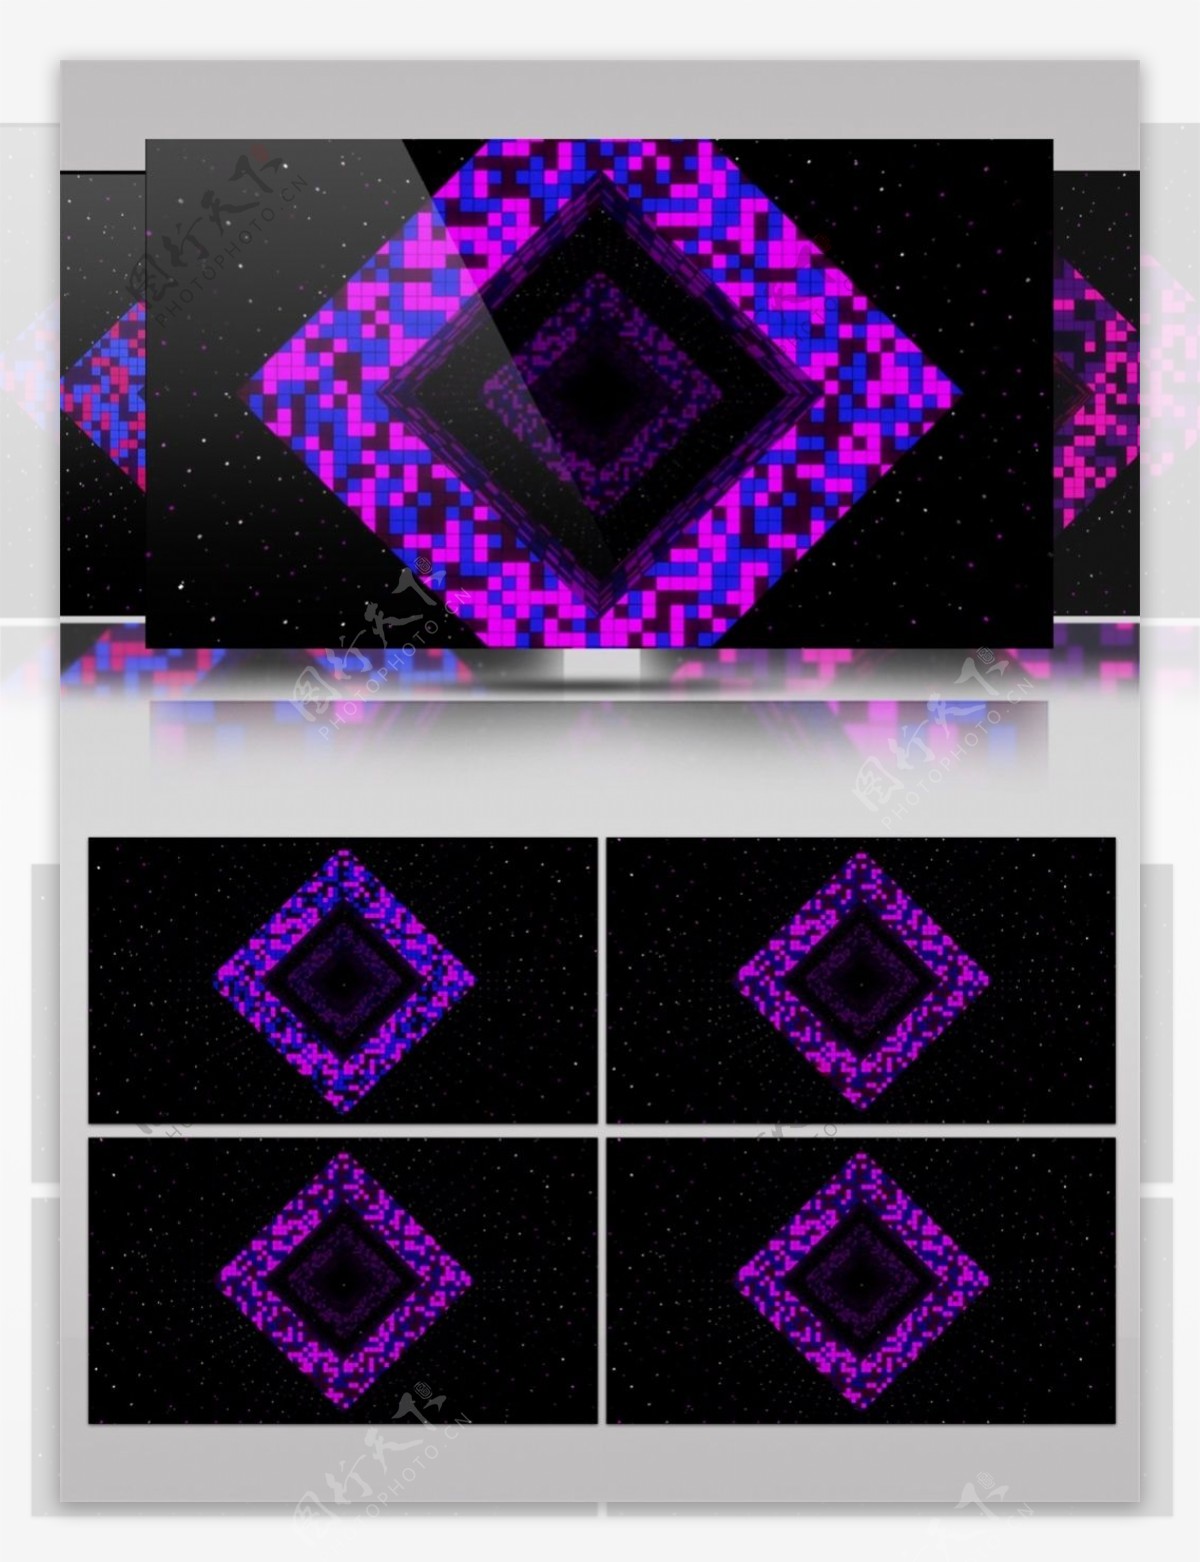 紫色花瓣光束视频素材